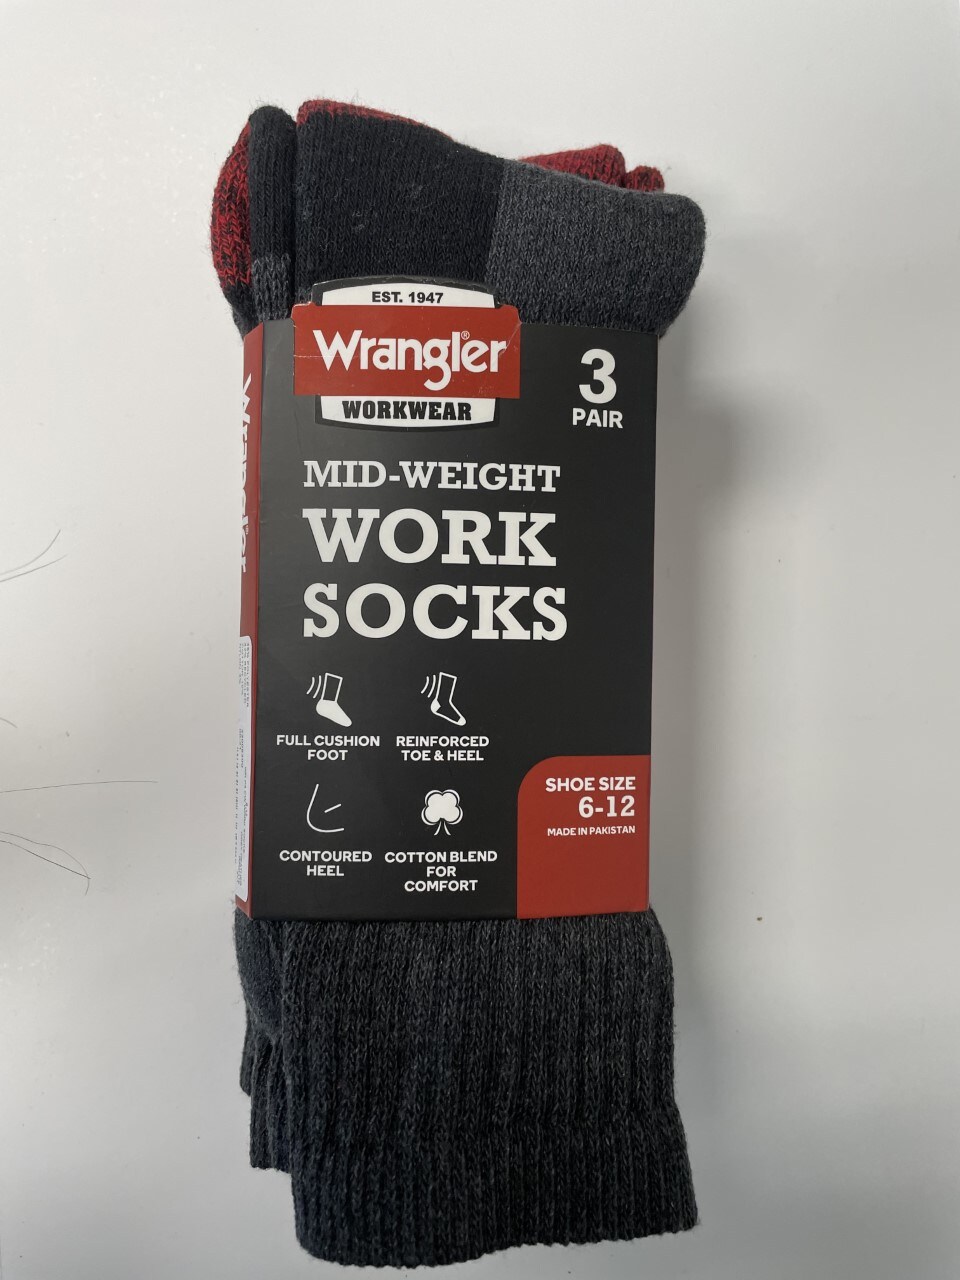 Wrangler 3-Pack Men's Cotton Blend Crew Socks (Size 8 To 12) in the ...